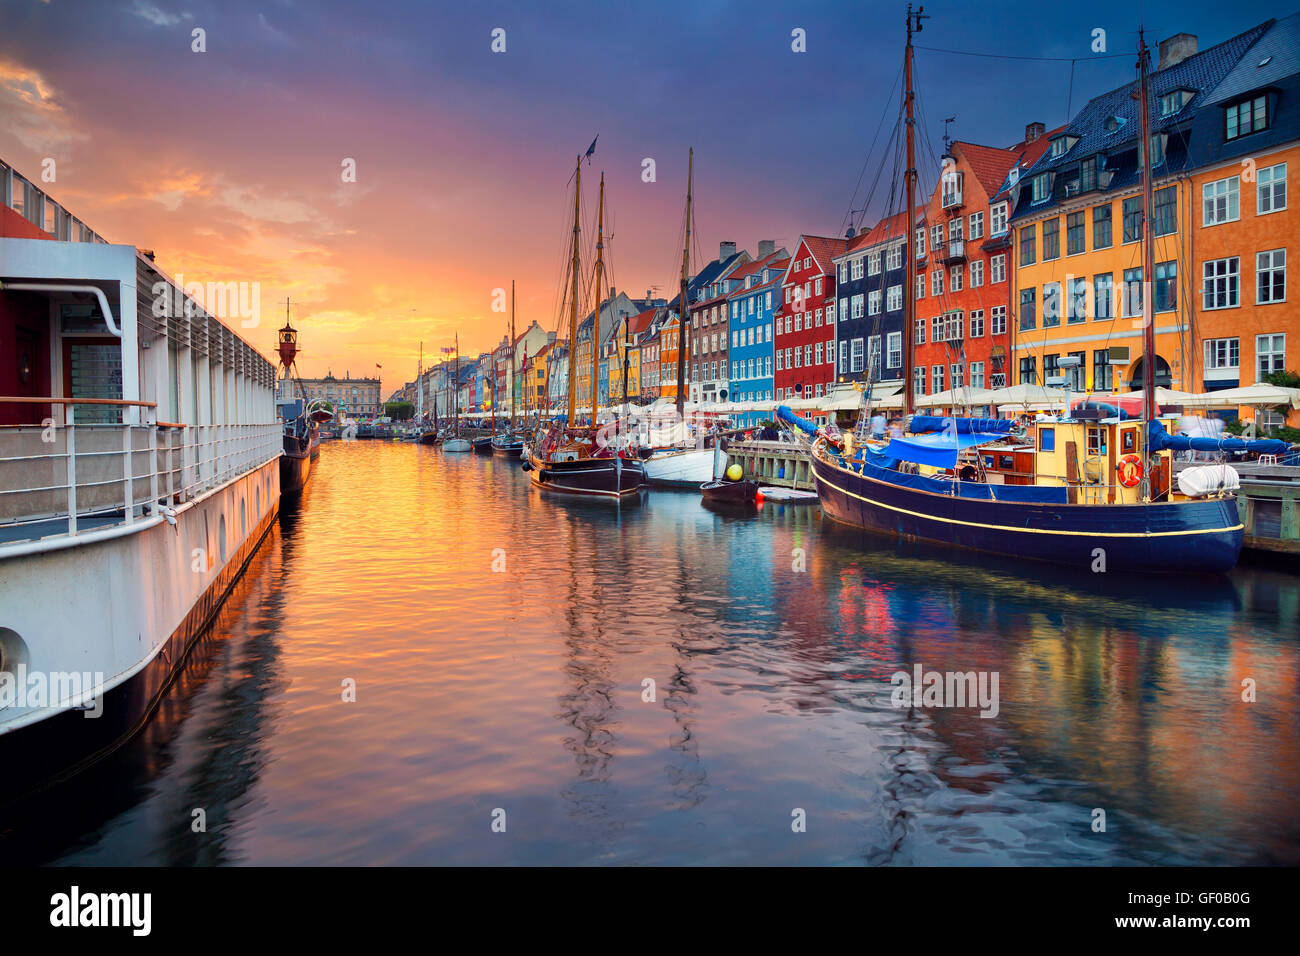 Canal de Nyhavn, Copenhague. image de canal Nyhavn à Copenhague, Danemark au cours de la magnifique coucher de soleil. Banque D'Images